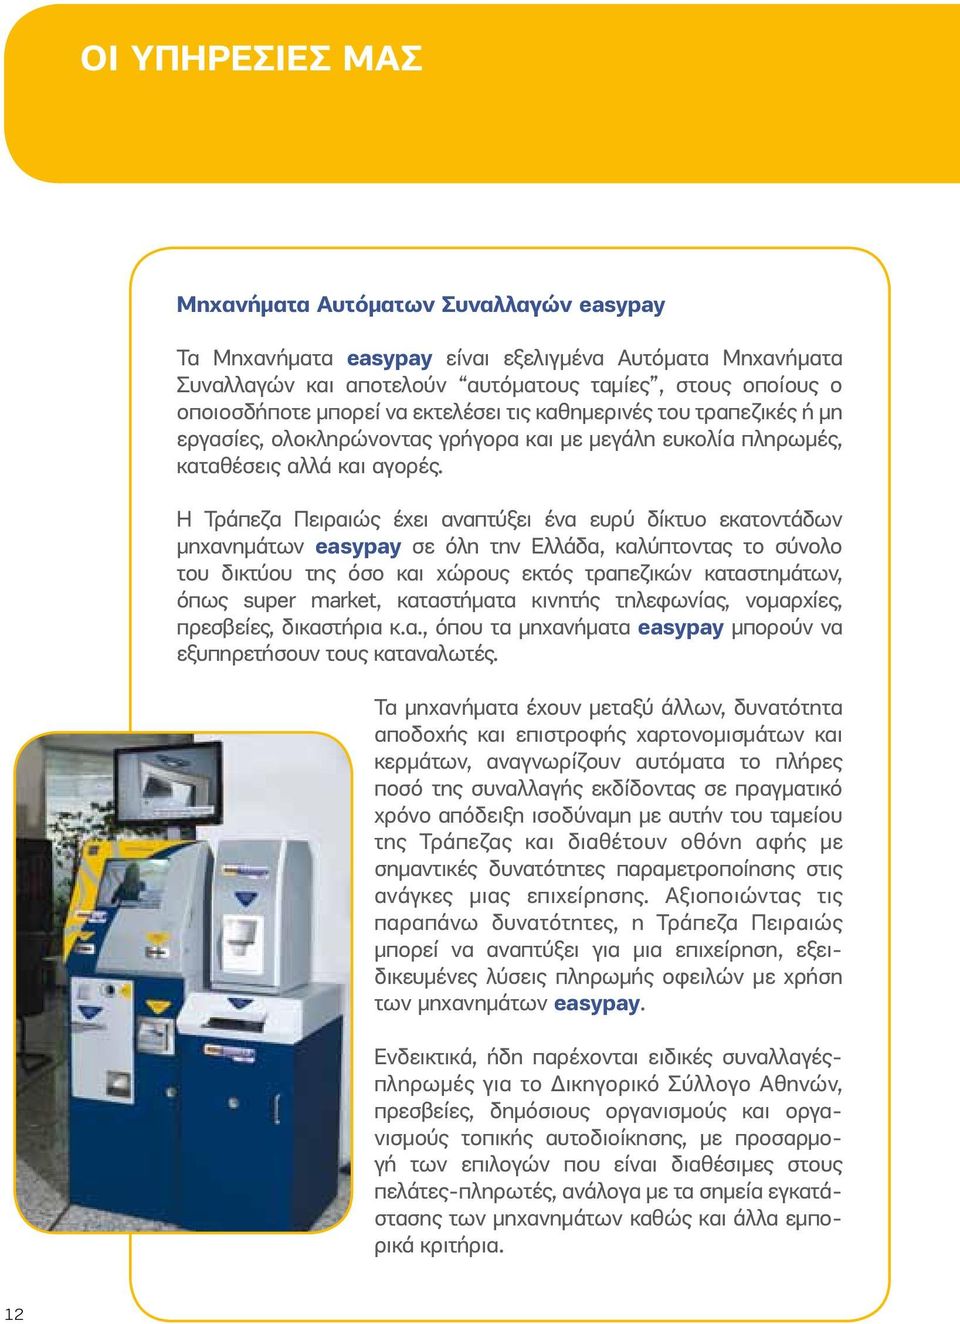 Η Τράπεζα Πειραιώς έχει αναπτύξει ένα ευρύ δίκτυο εκατοντάδων μηχανημάτων easypay σε όλη την Ελλάδα, καλύπτοντας το σύνολο του δικτύου της όσο και χώρους εκτός τραπεζικών καταστημάτων, όπως super